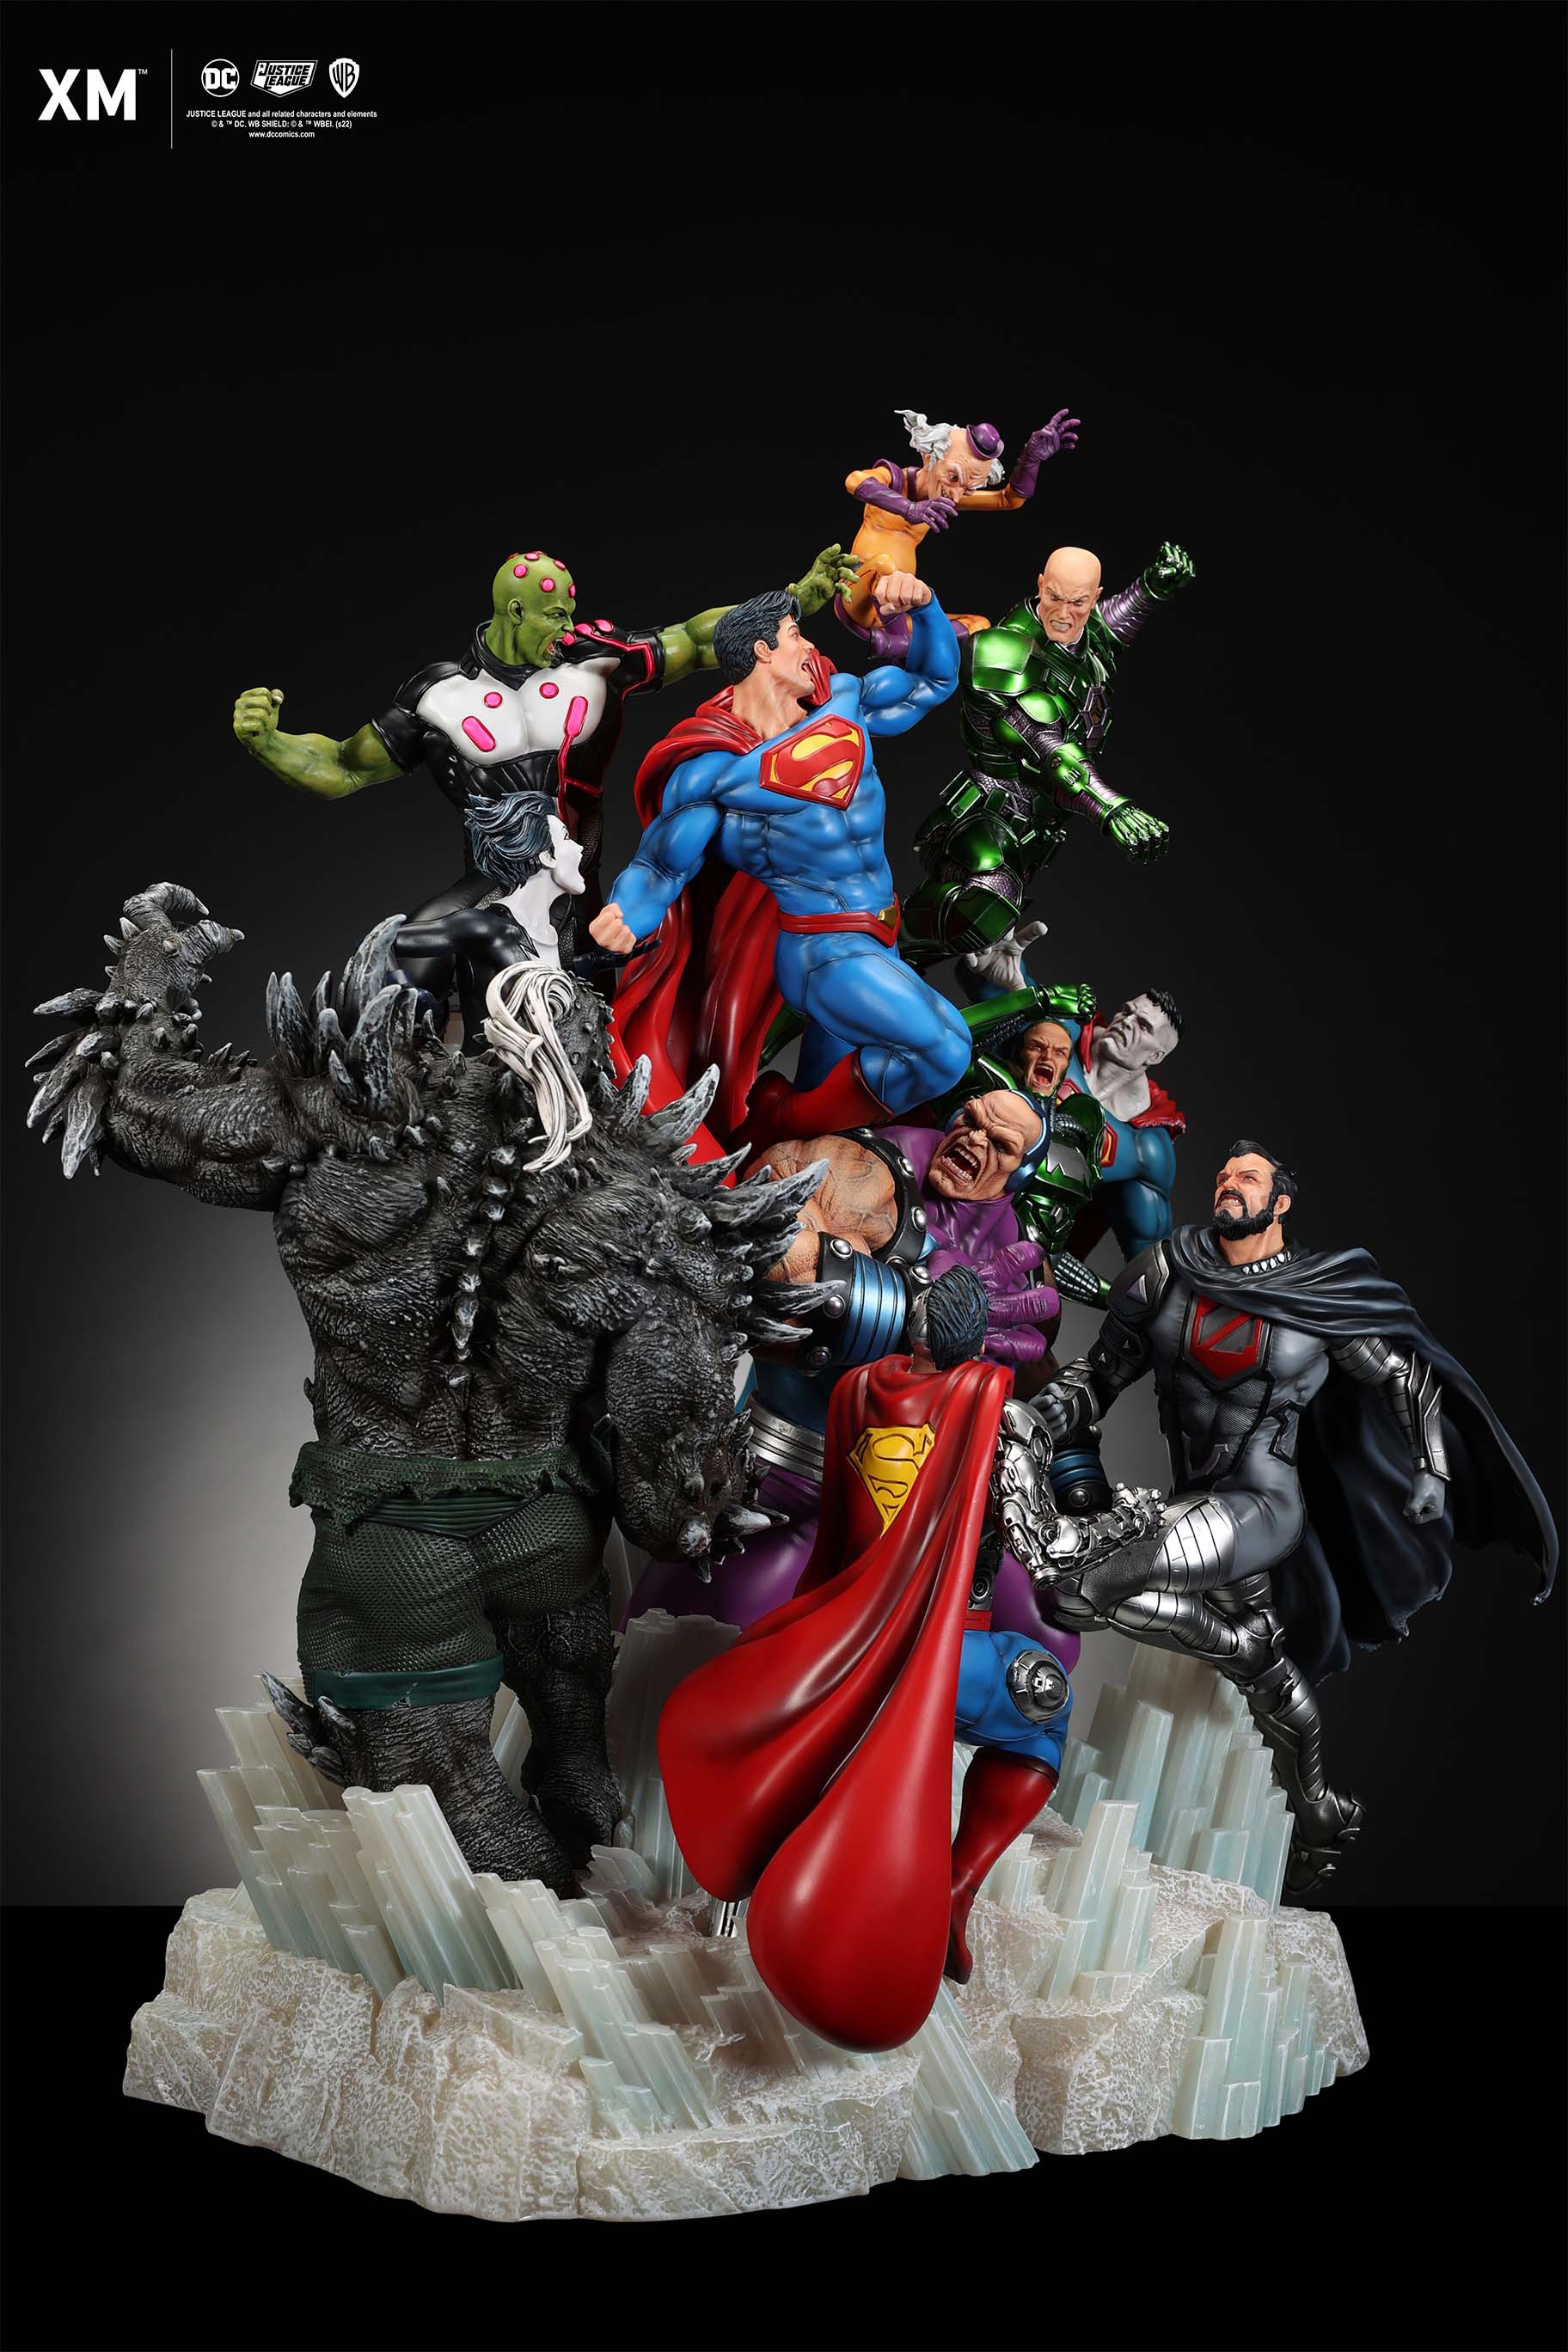 https://www.fortalezadelasoledad.com/imagenes/2023/01/06/xm_studios_superman_justice_statue.jpg